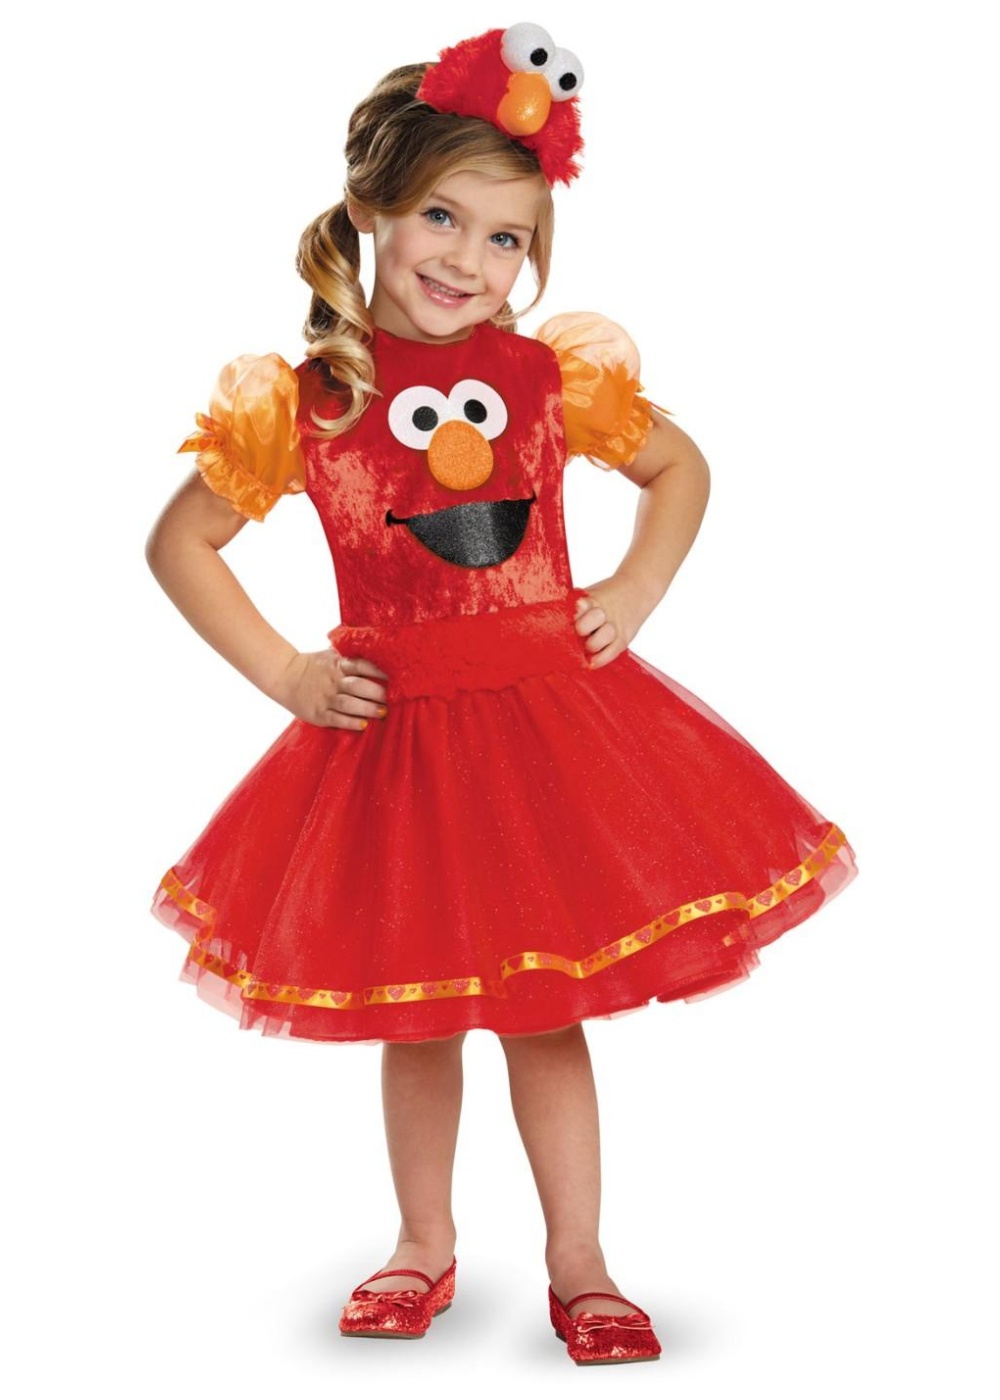  Girls Elmo Tutu Baby Costume